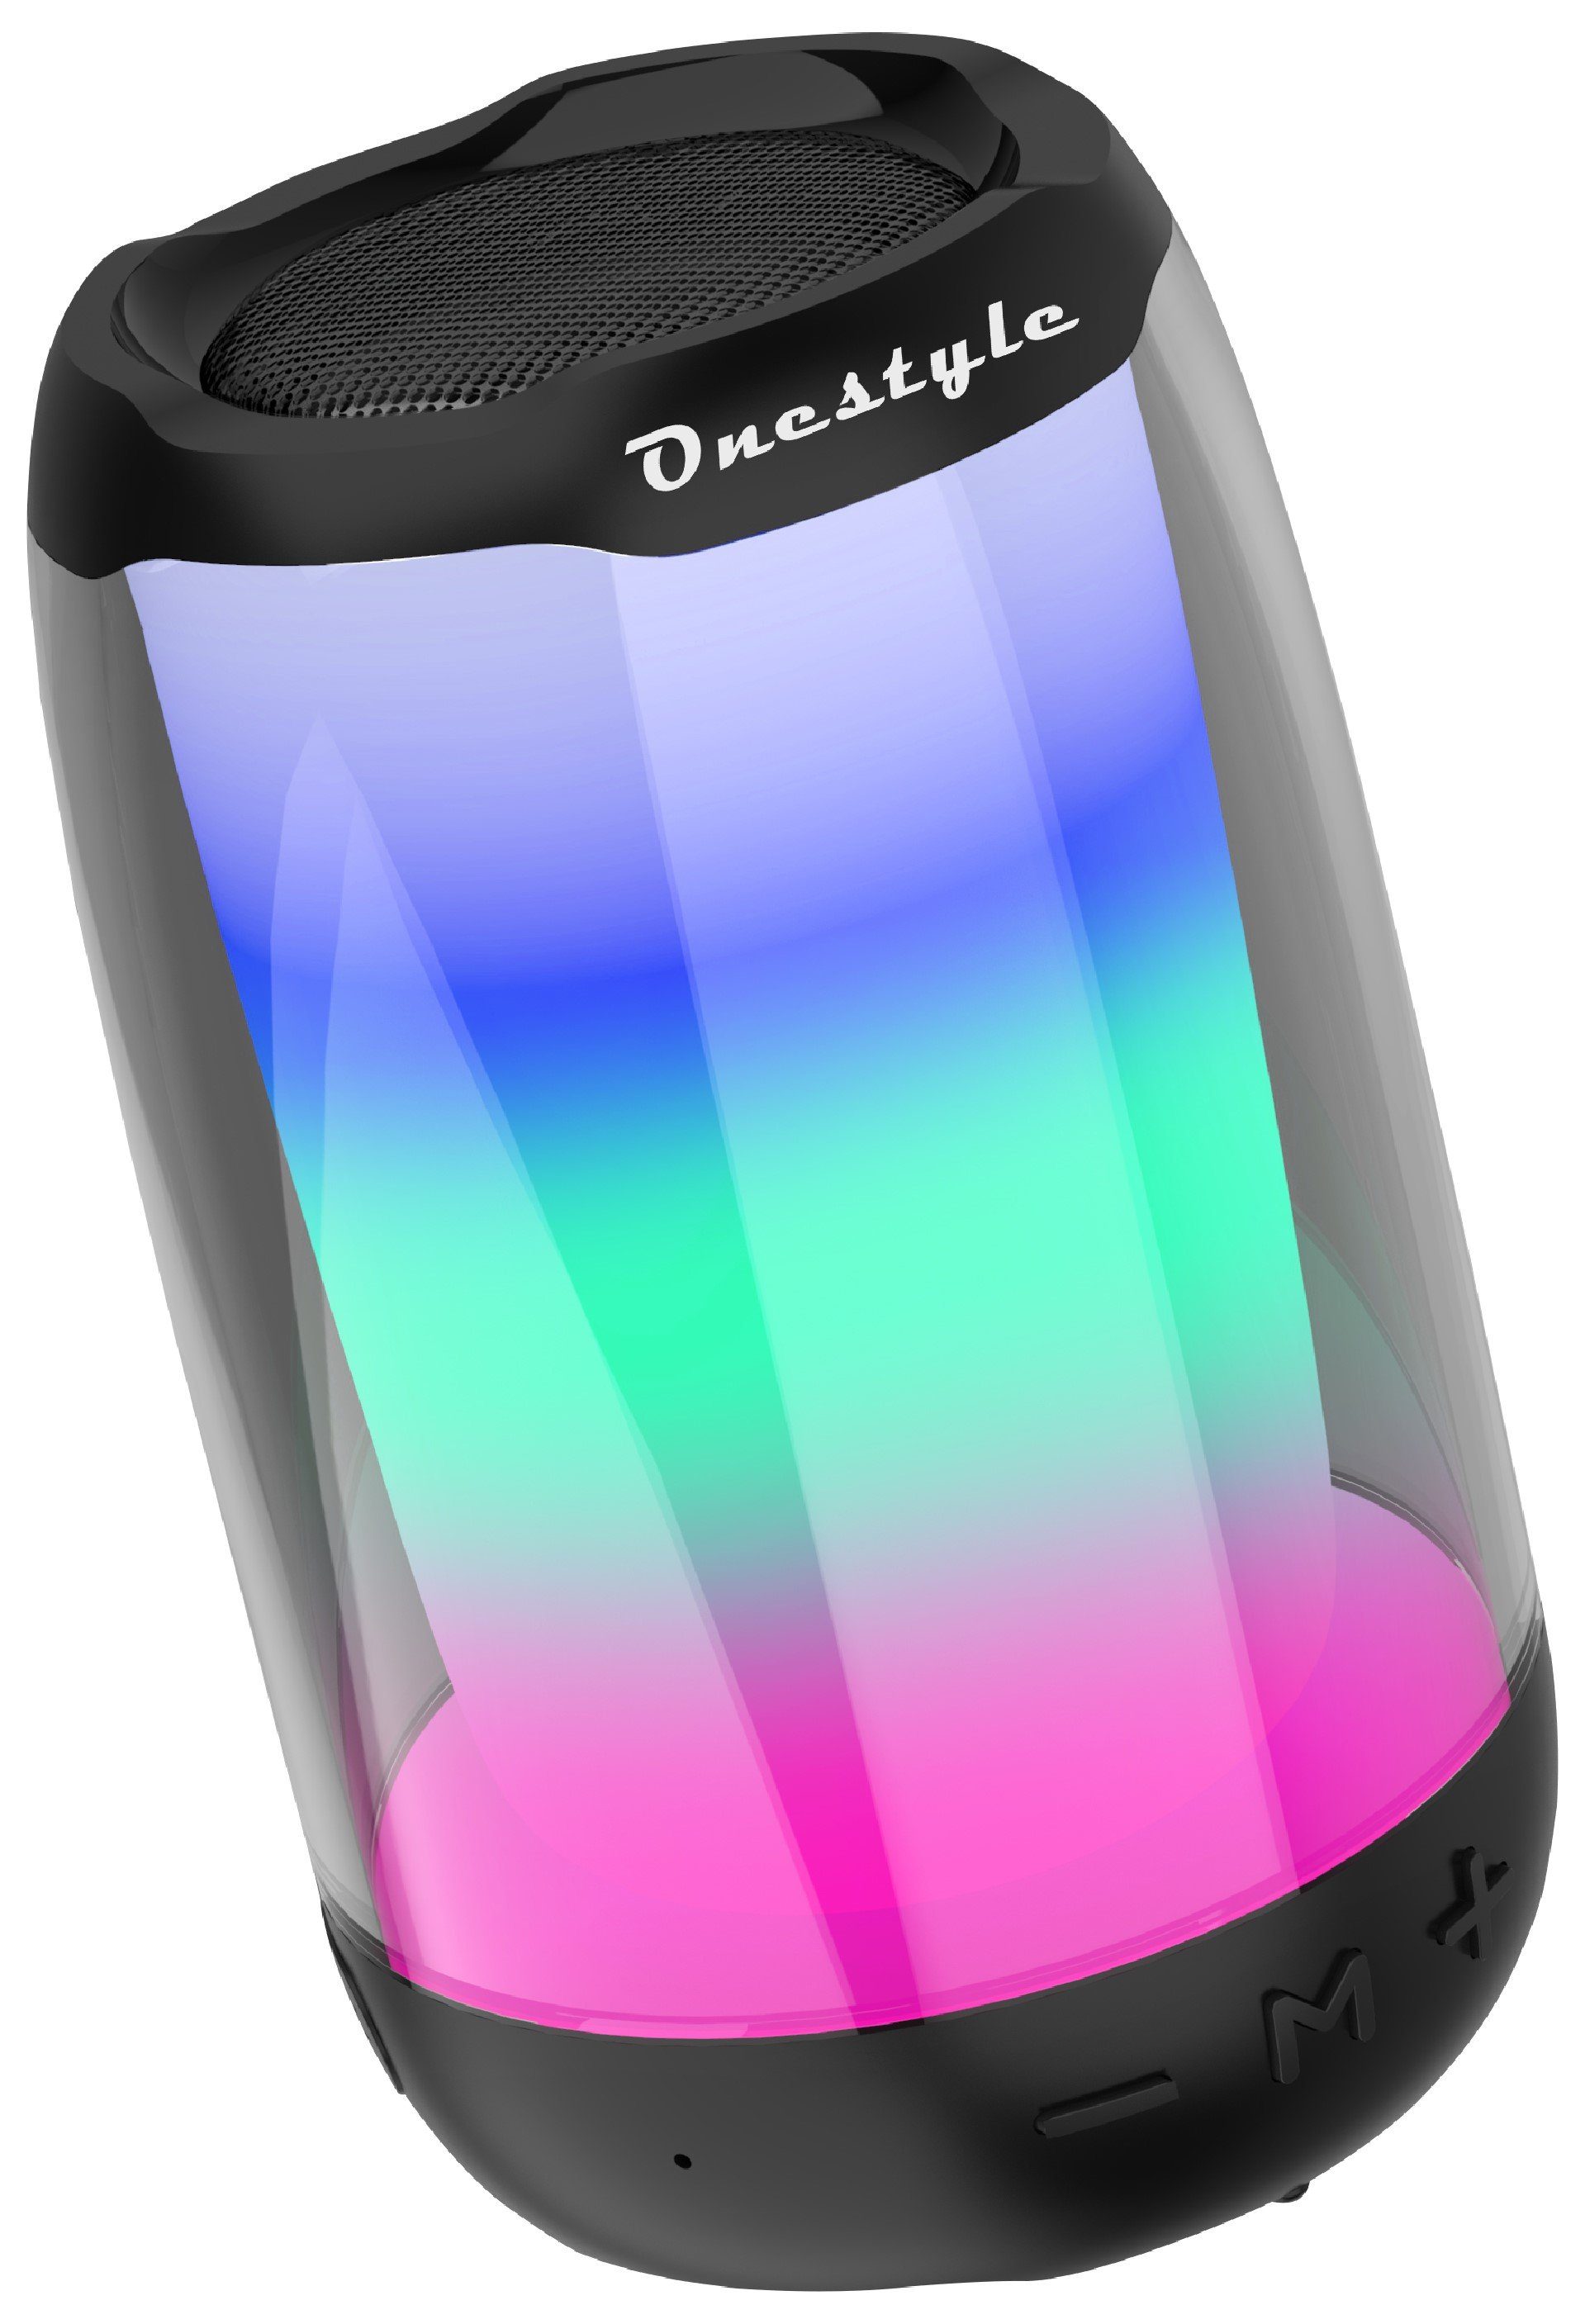 Onestyle Soundcolor-01 Bluetooth-Speaker (Bluetooth, A2DP, HSP, AVTDP, AVRCP, Klang) HFP, Beleuchtungseffekte, Hochauflösender